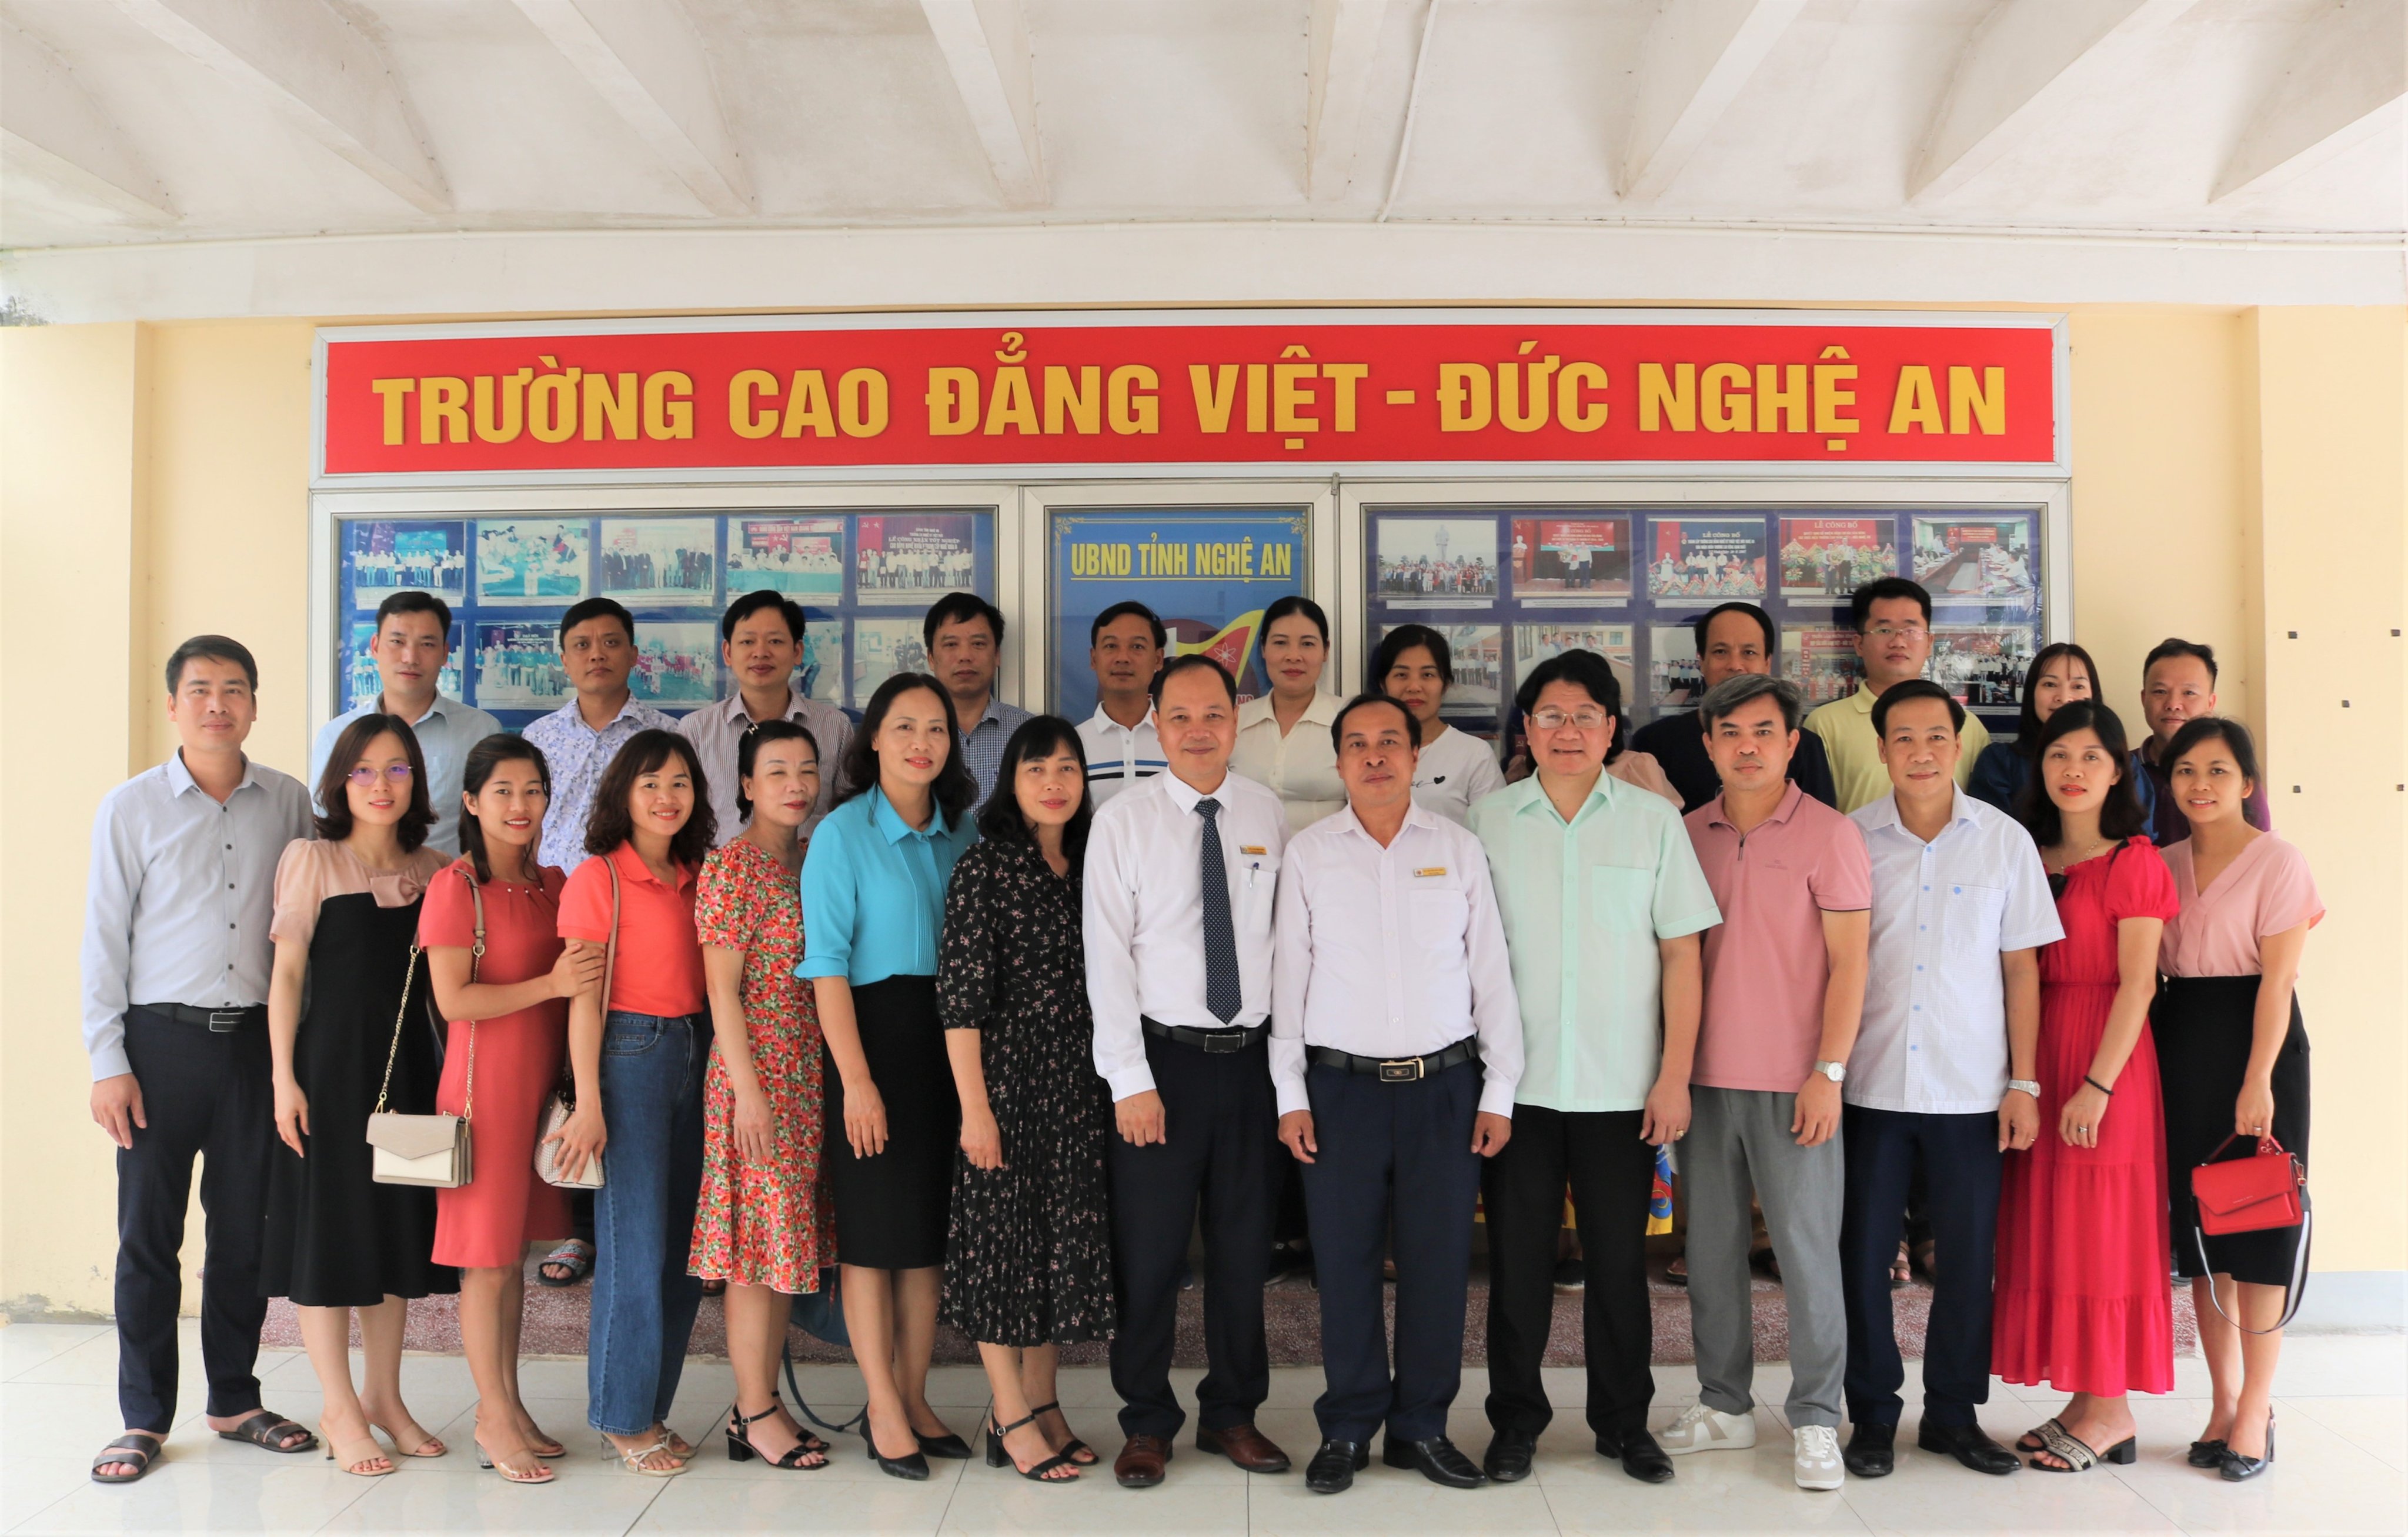 Đoàn công tác Trường Cao đẳng nghề Phú Thọ đến tham quan và làm việc tại Trường Cao đẳng Việt – Đức Nghệ An